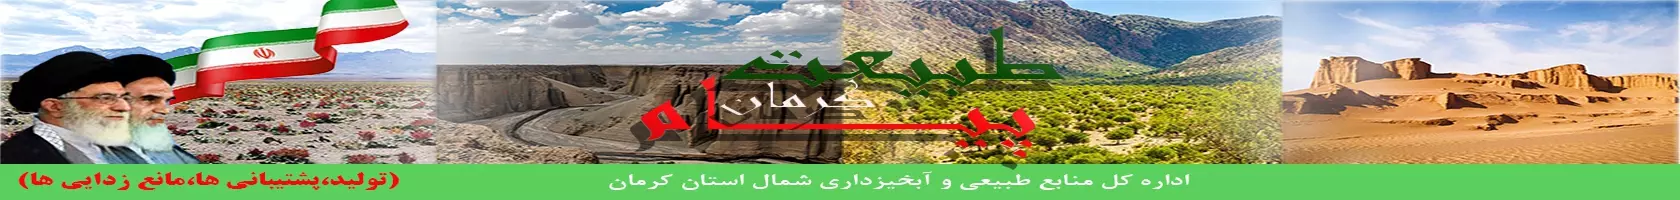  اداره کل منابع طبیعی و آبخیزداری شمال استان کرمان